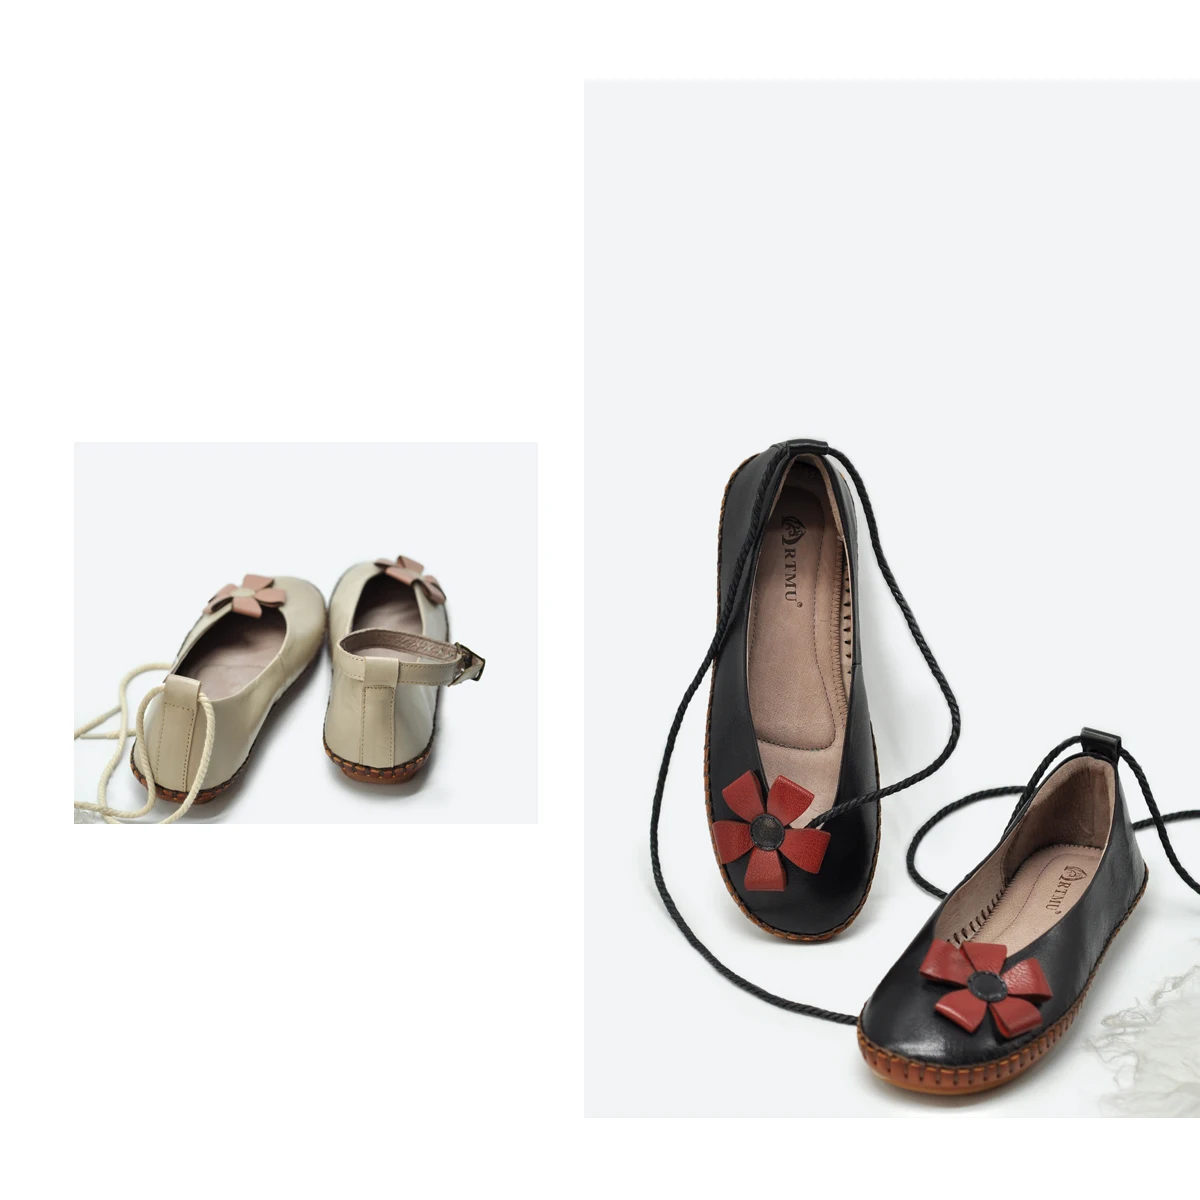 Artmu/милые женские туфли с цветочным принтом; туфли из овечьей кожи на плоской подошве; обувь ручной работы из натуральной кожи на мягкой подошве; 9703-17